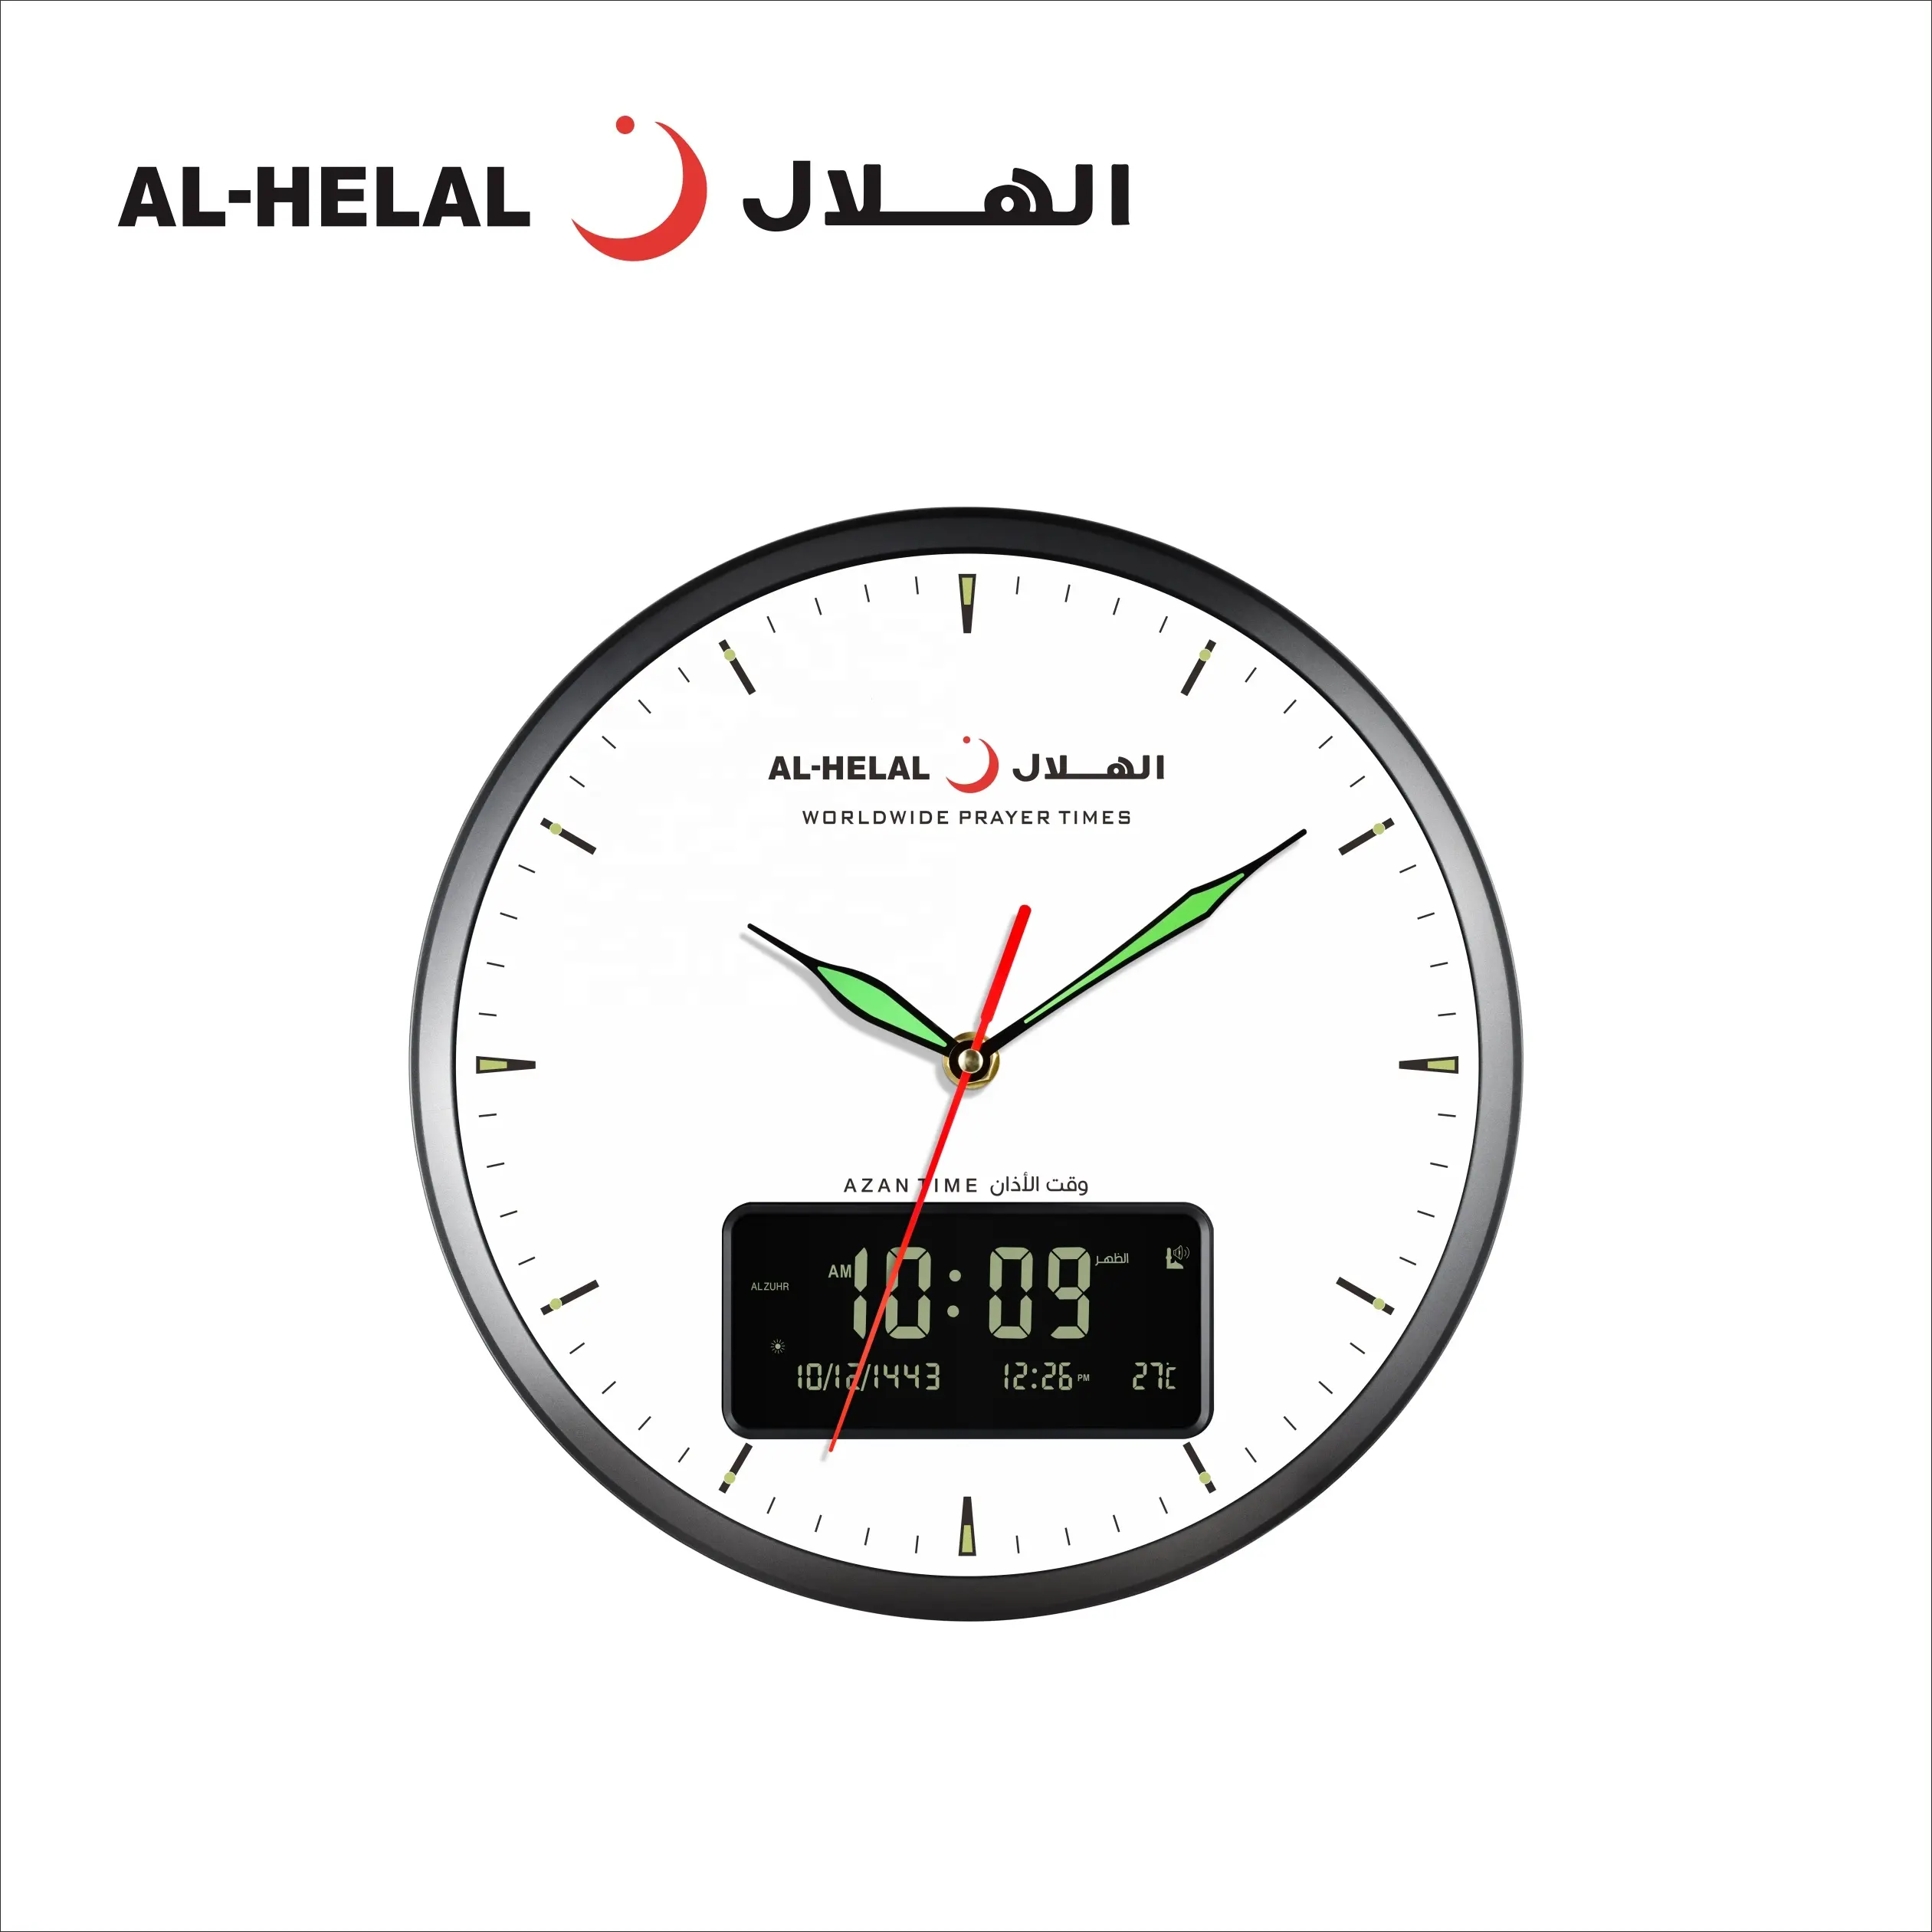 アルヘラルムスリムアザン時計イスラムアサン時計アラビア壁掛け時計